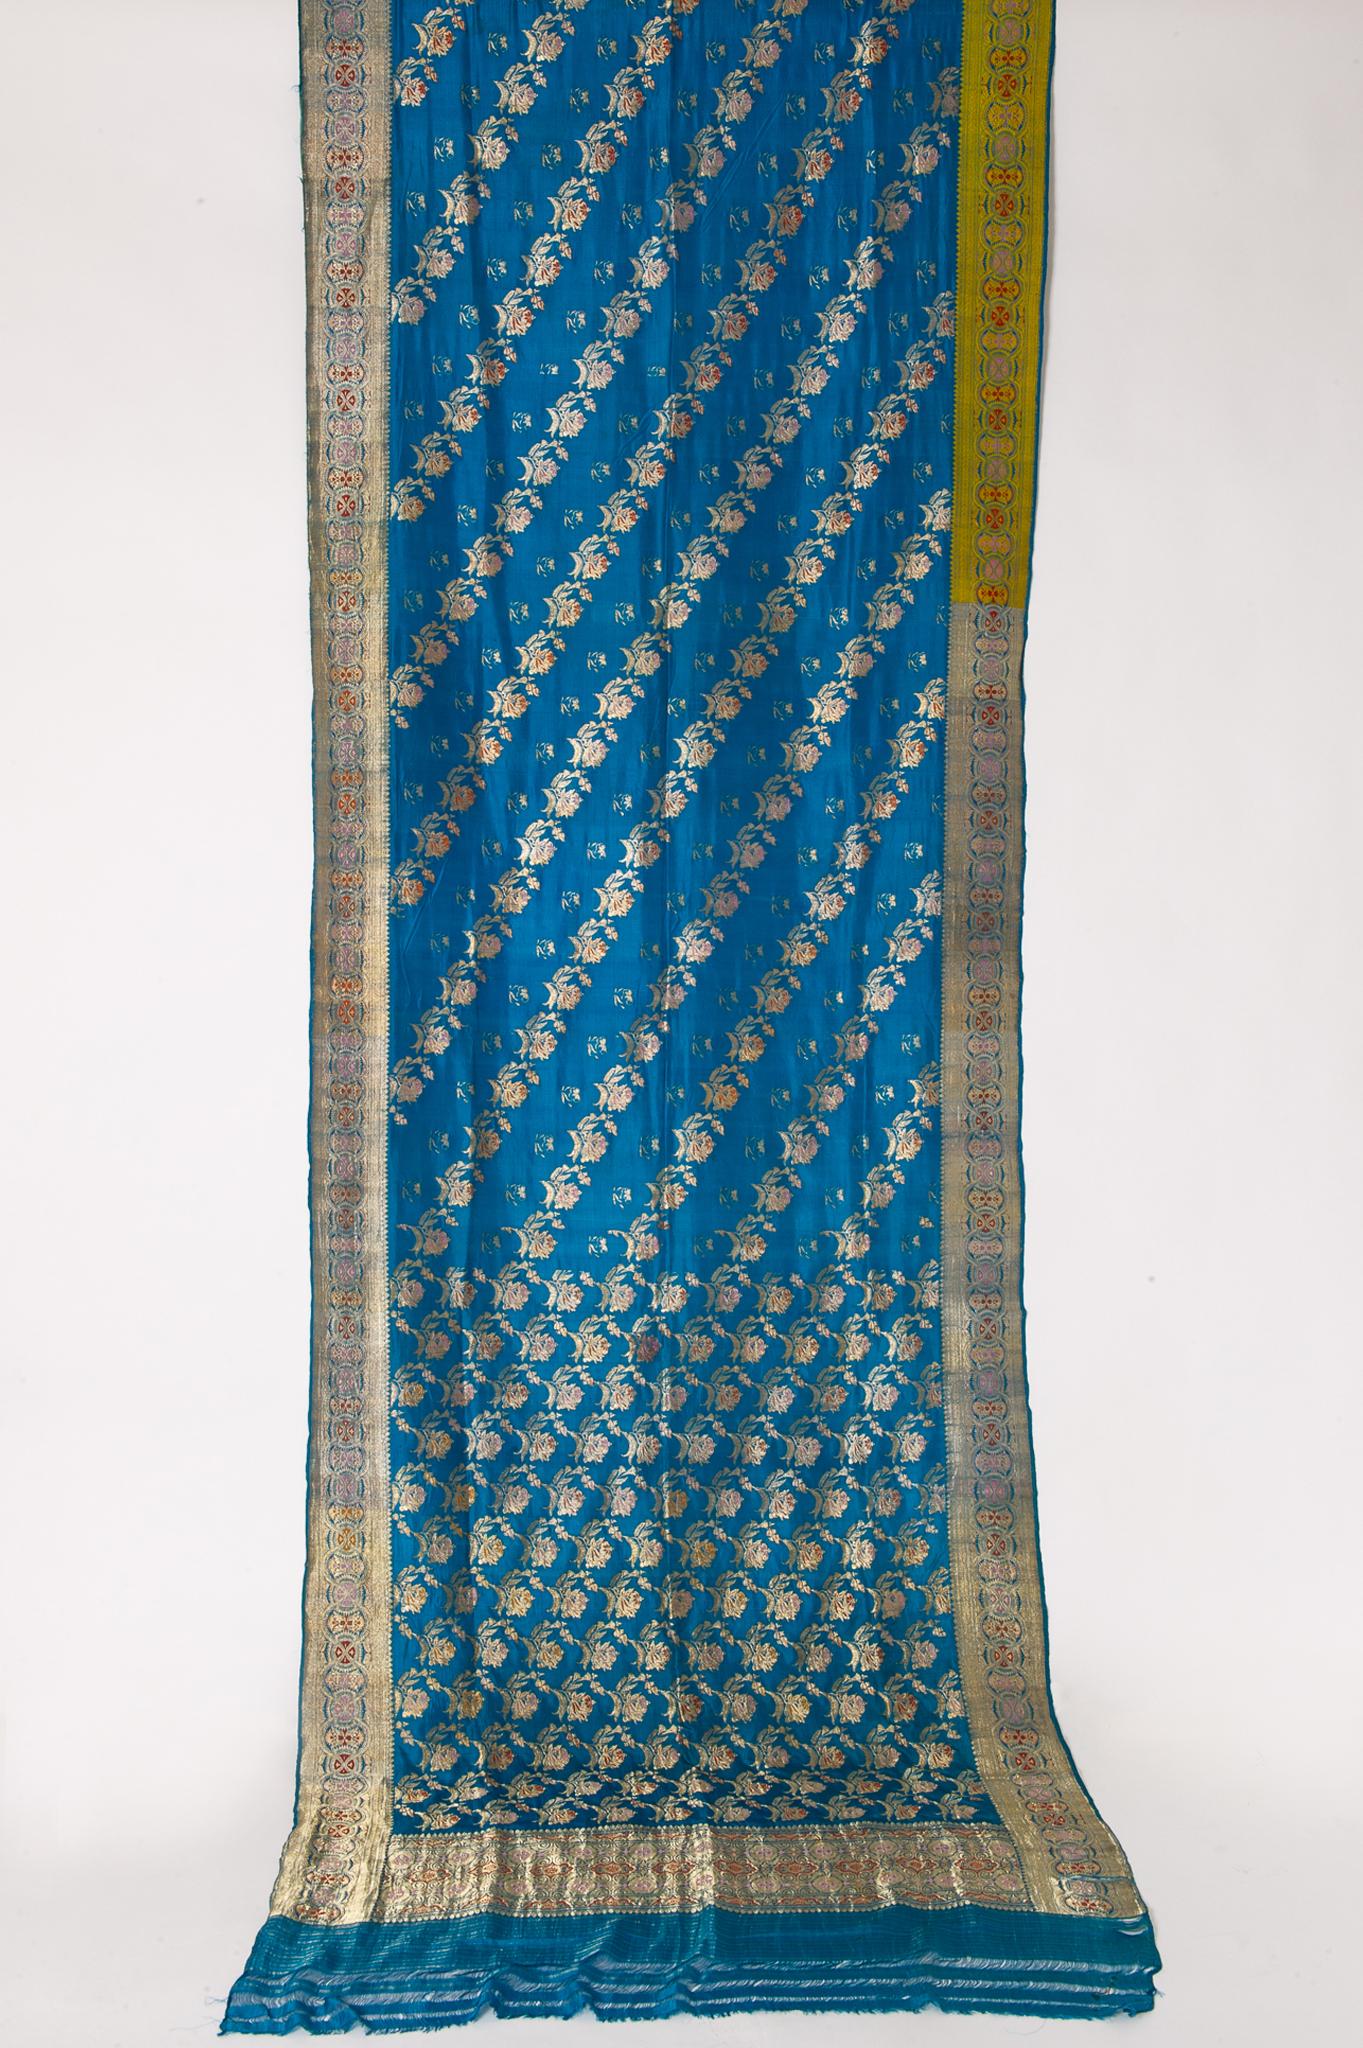 Magnifique sari vintage turquoise, avec un riche motif floral : une nouvelle idée pour des rideaux inhabituels ou une ROBE DE SOIRÉE !
Elle a été portée, mais lavée. Il peut y avoir encore des taches. Le tissu est peut-être en soie, mais je pense